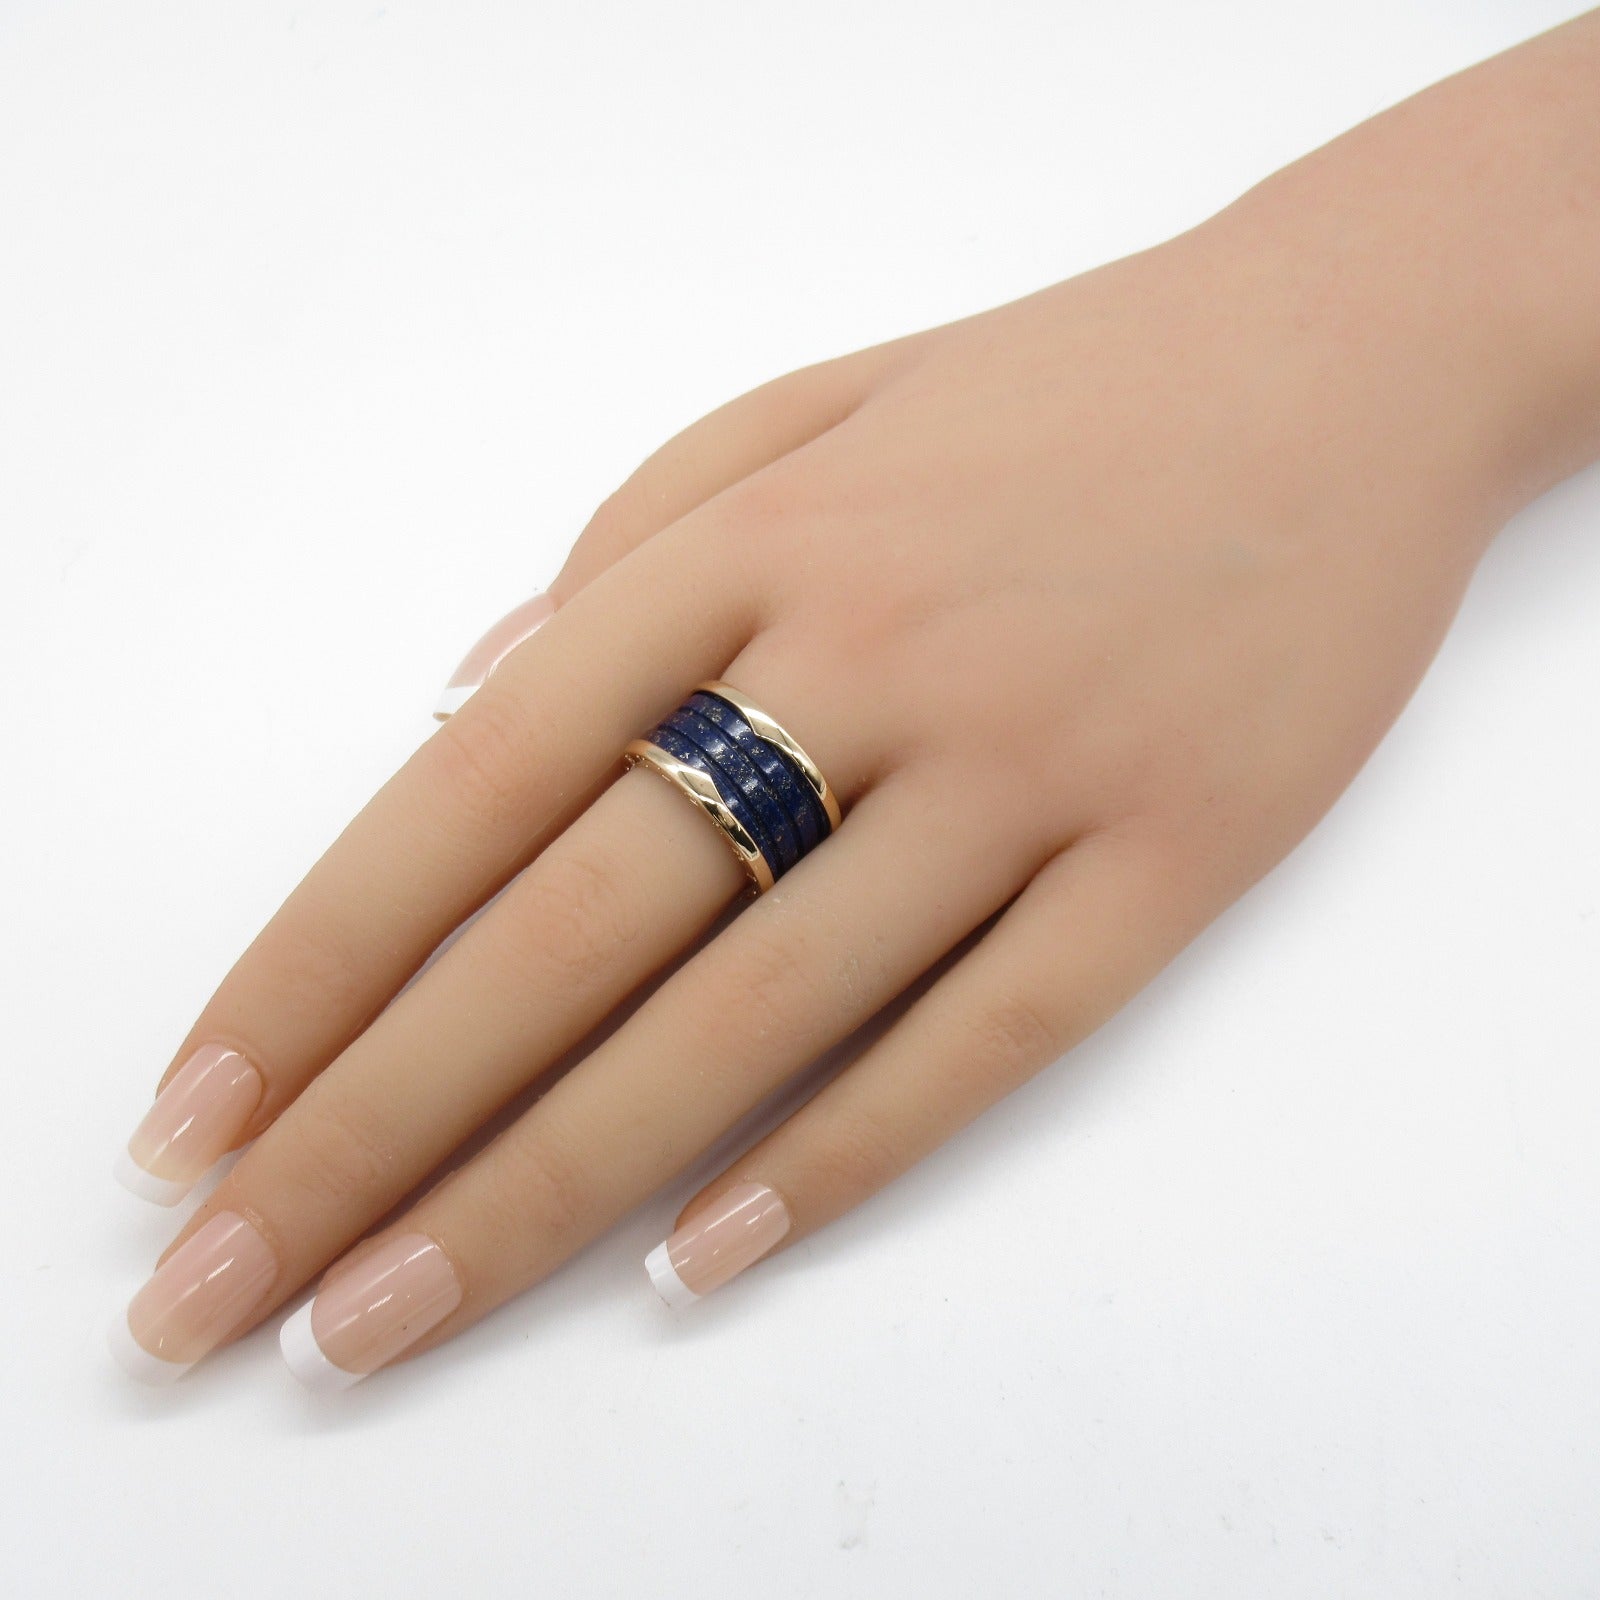 Bulgari BVLGARI B-zero1 Beezero One Marble Ring Ring Ring Jewelry K18PG (Pink G) Rapislasli   Blue